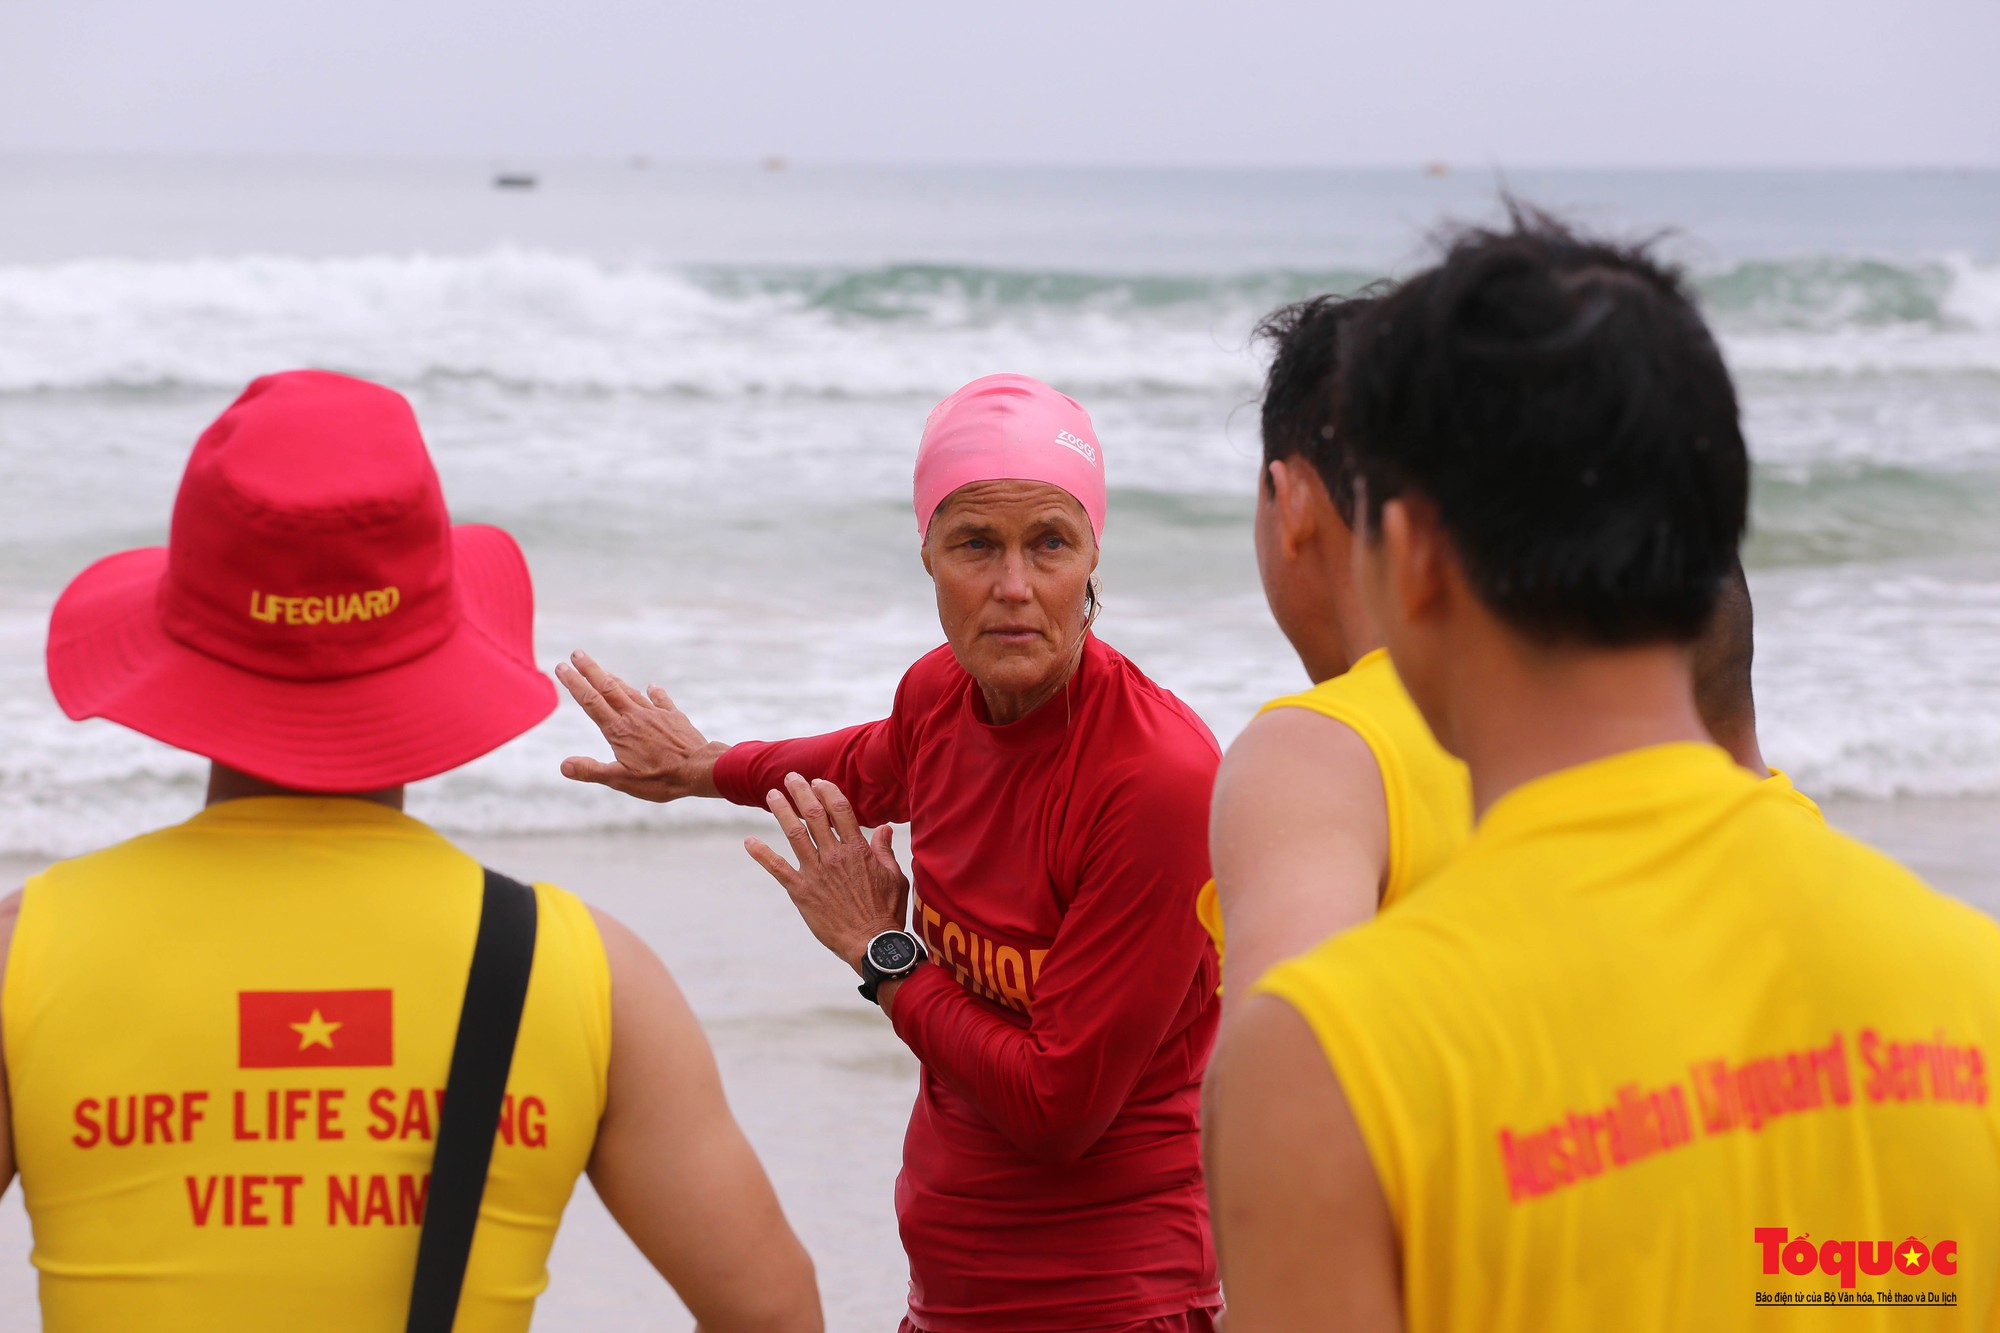 Hình ảnh chuyên gia quốc tế giúp Đội cứu hộ biển Đà Nẵng kỹ năng cứu hộ - Ảnh 7.